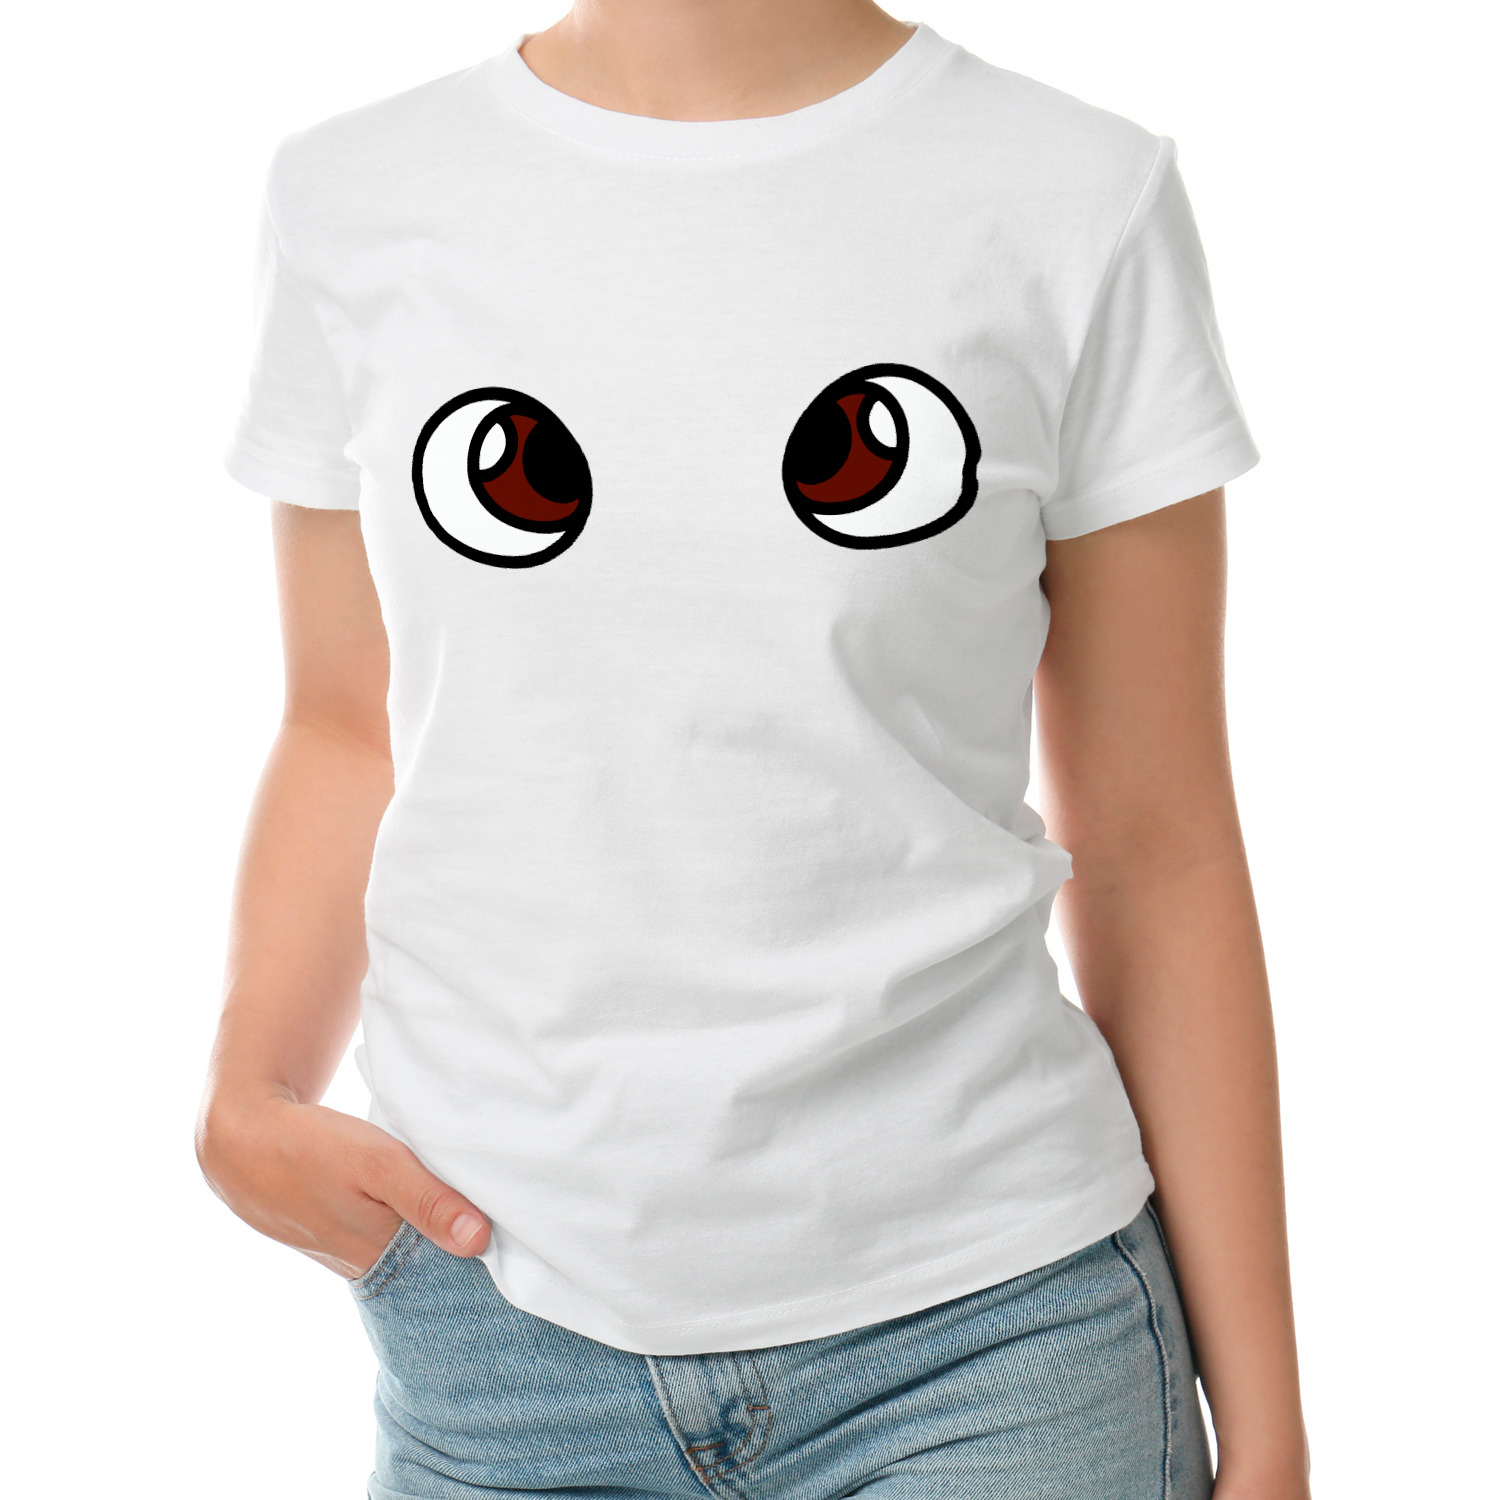 Футболка глаза. Женская футболка глаза. Детская футболка с глазом. Футболка с глазами на груди. Майка с глазами